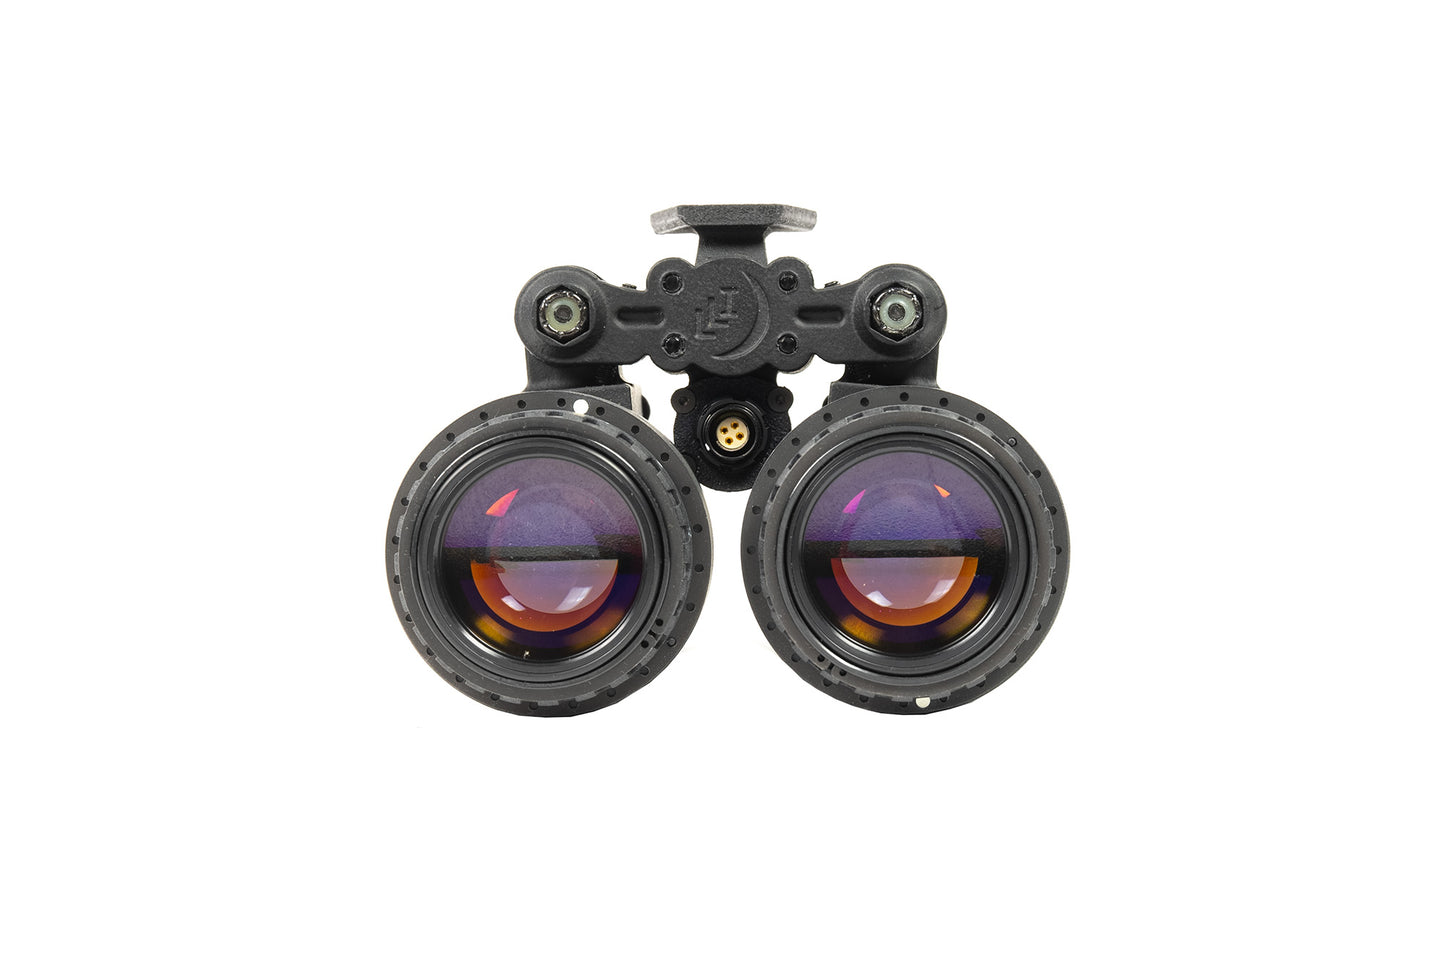 Custom Built Low Light Innovations LLUL-21 Binocular NVG